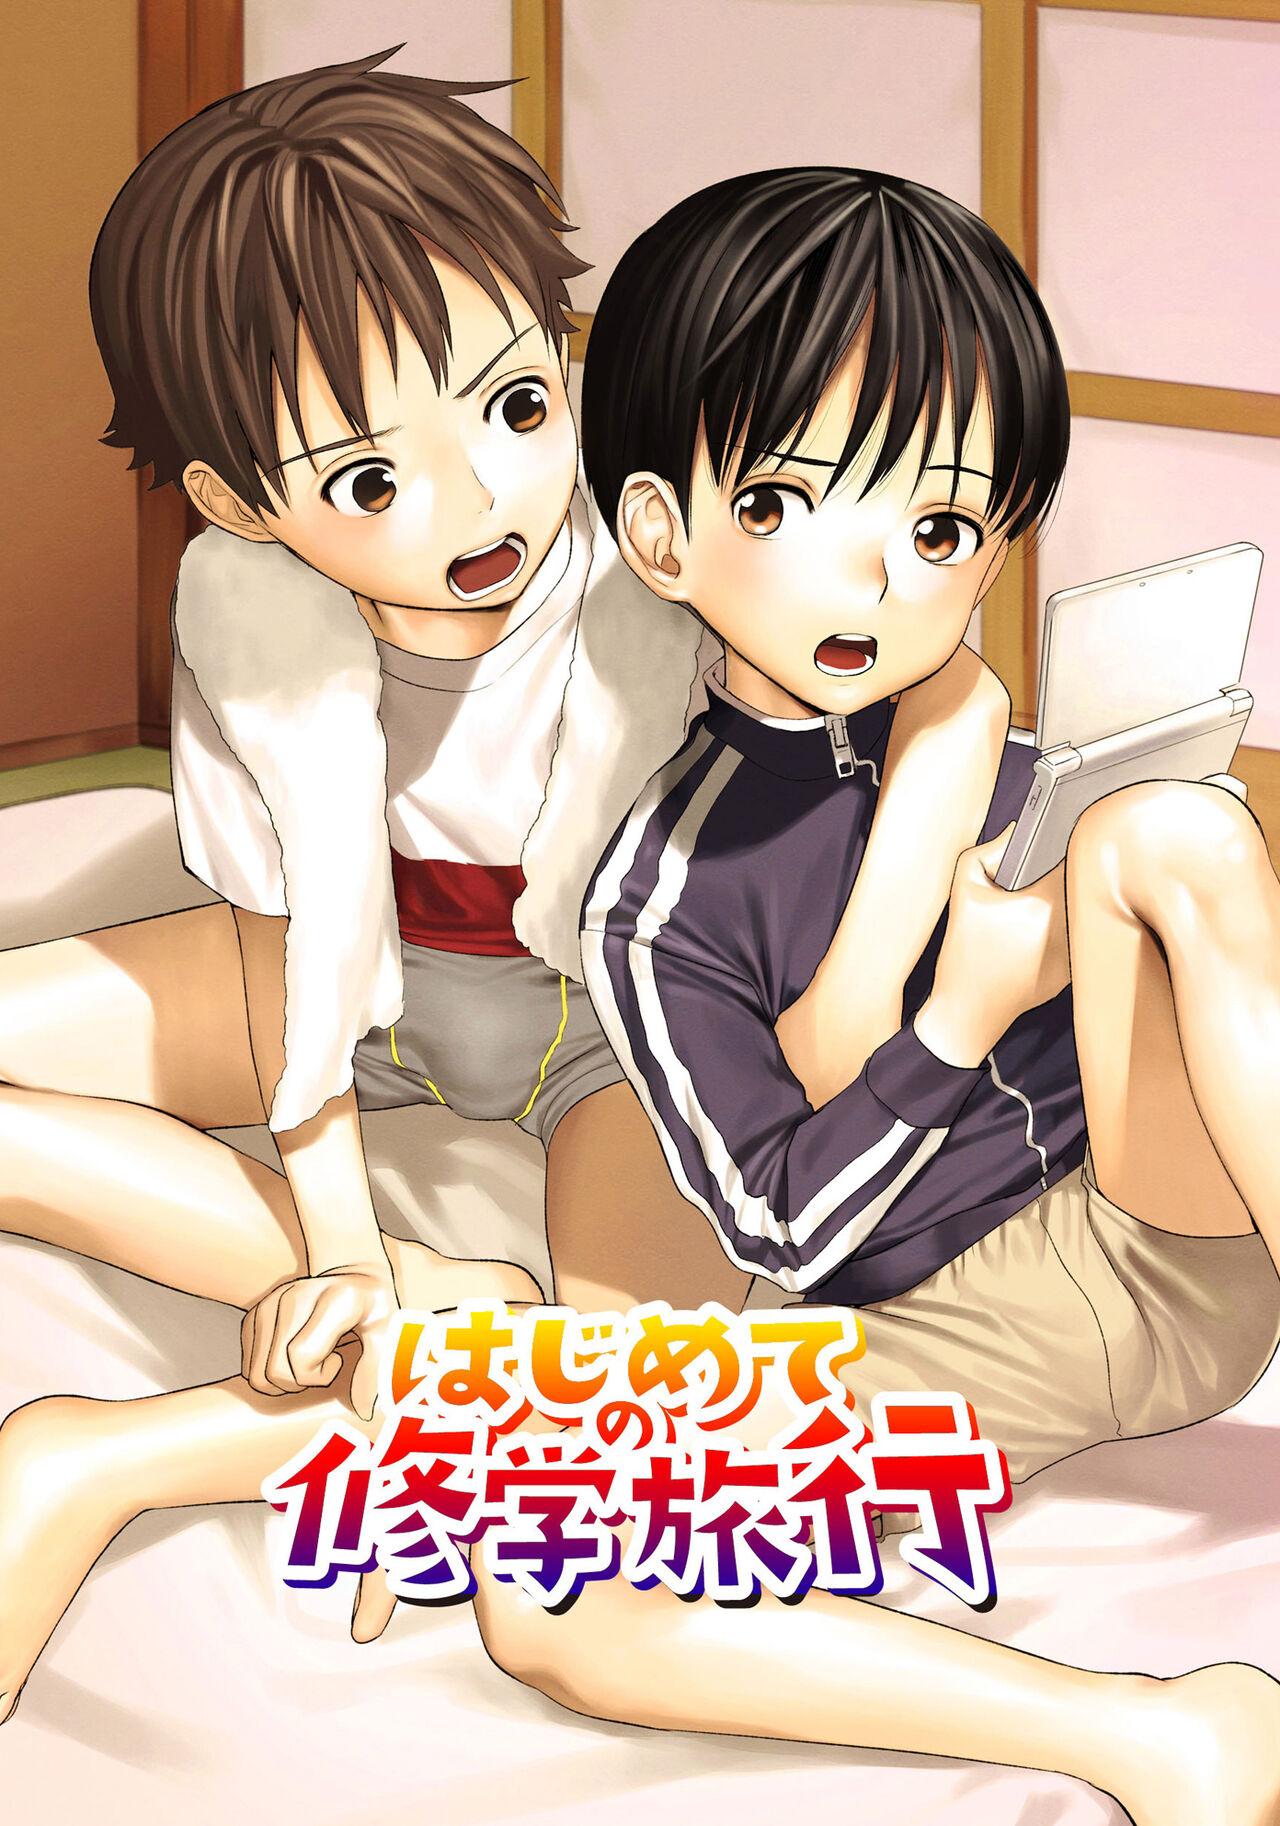 Hentai Shounen Kyoukasho - HENTAI BOYS SCHOOLBOOK 124